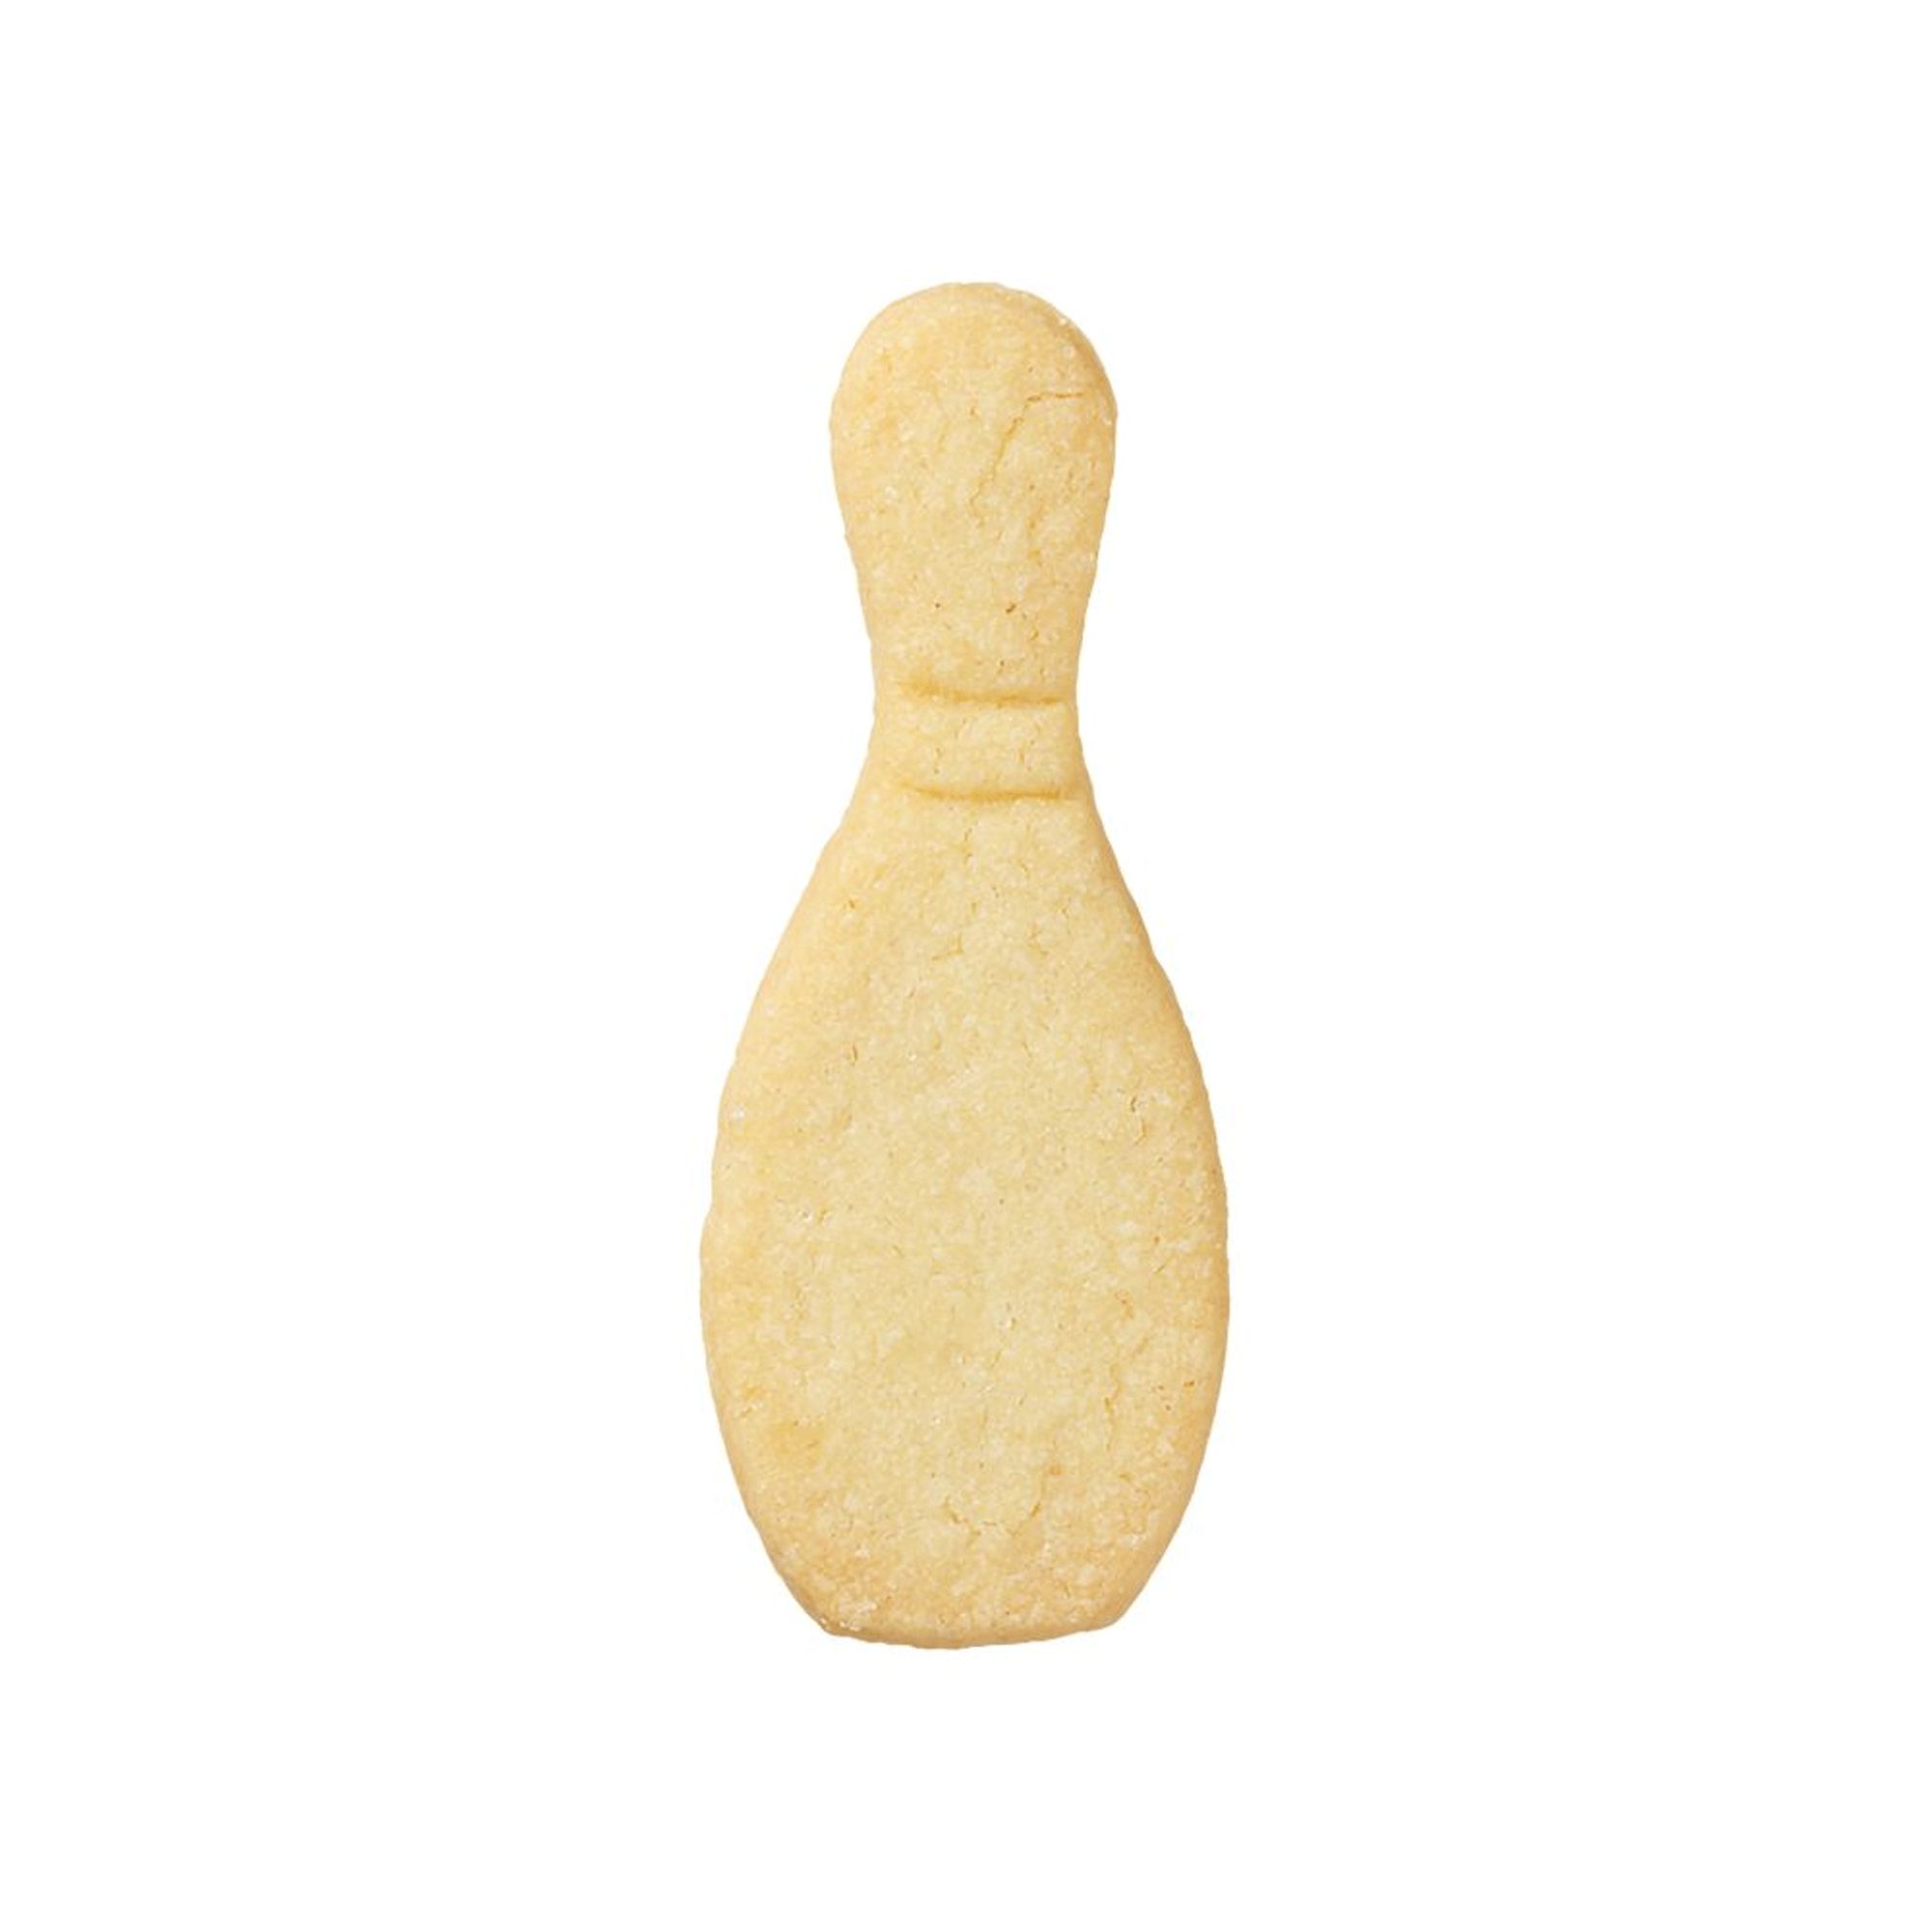 RBV Birkmann - Cookie cutter Cone 7 cm